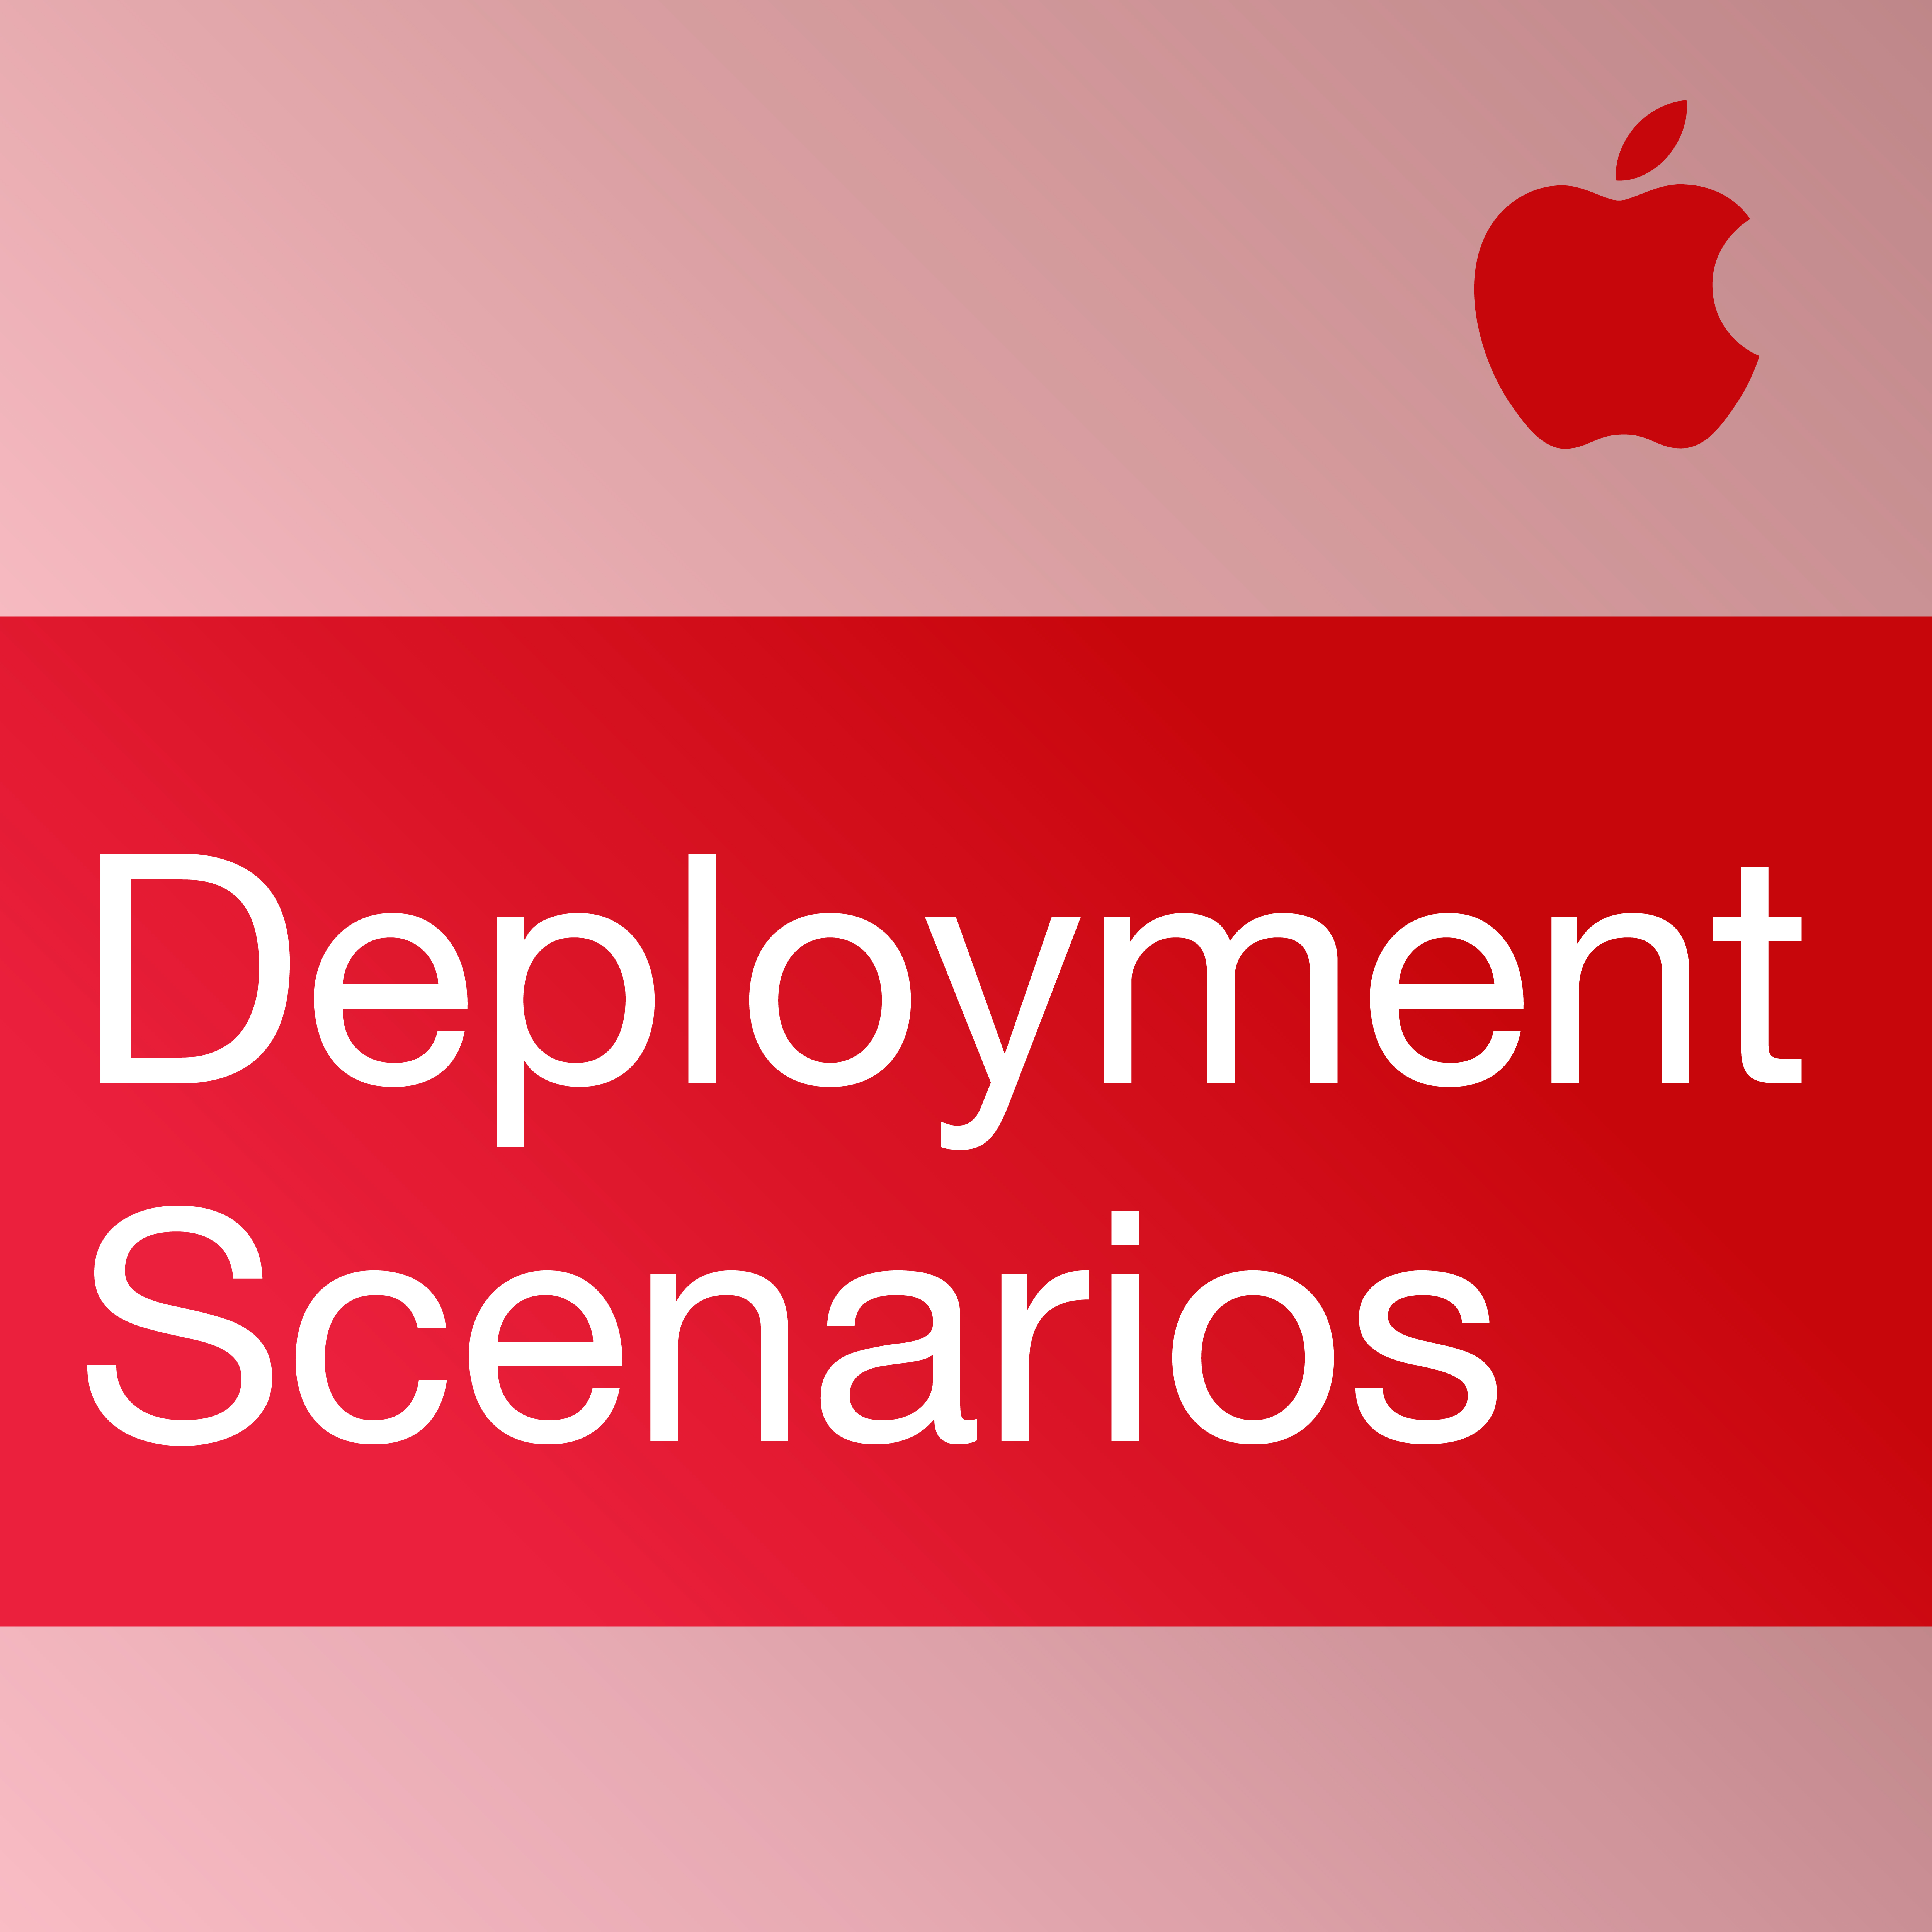 iPhone in Business: Deployment Scenarios